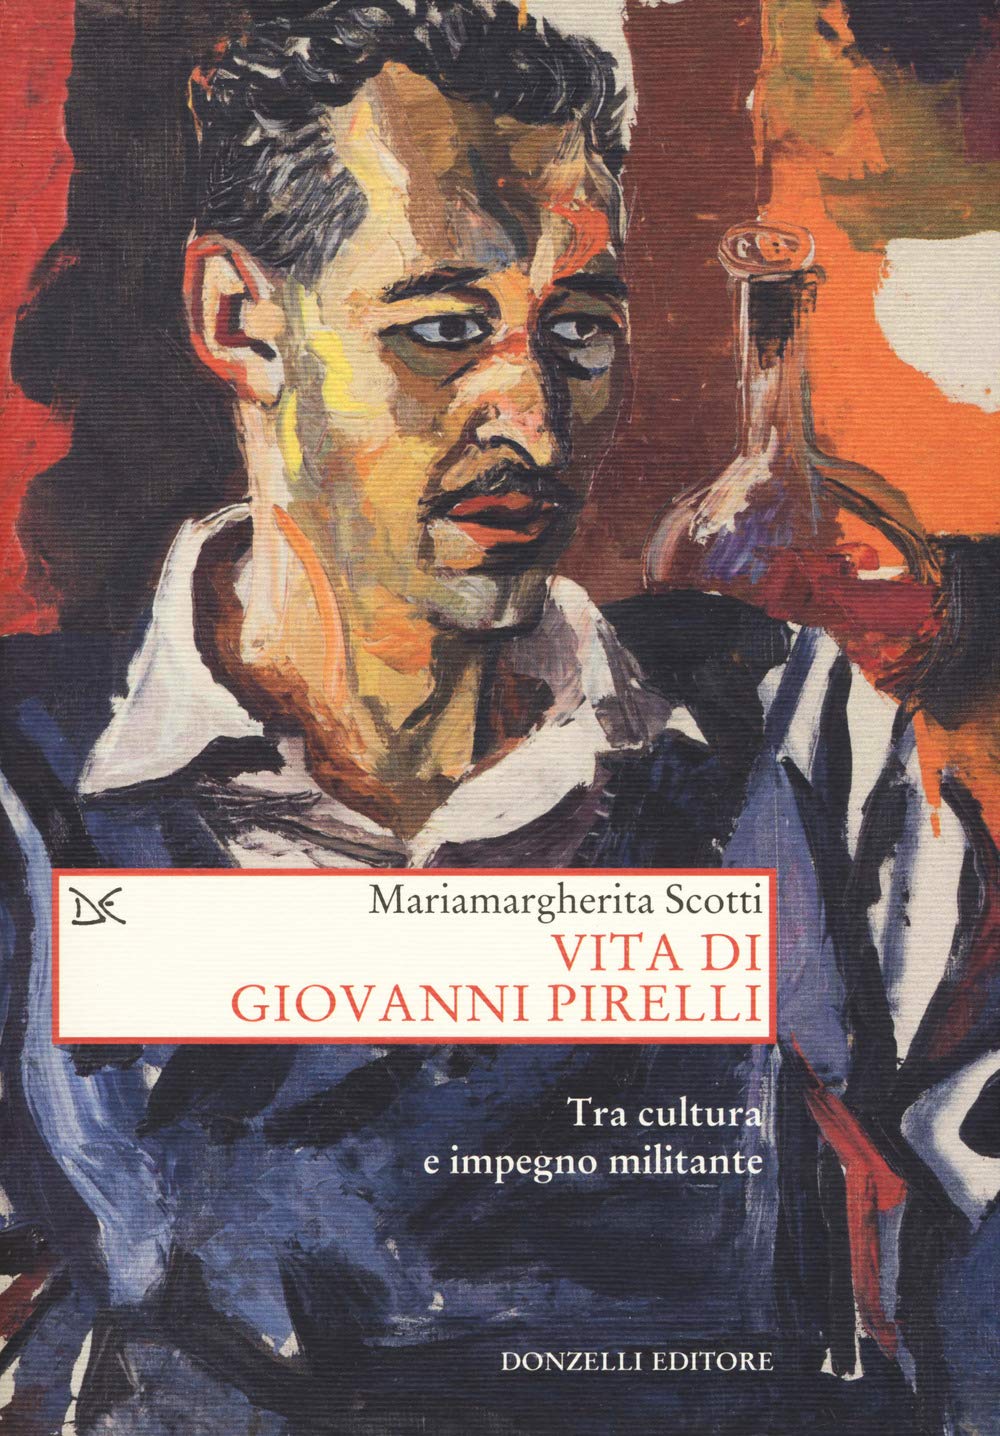 Vita di Giovanni Pirelli, copertina libro di Mariamagherita Scotti